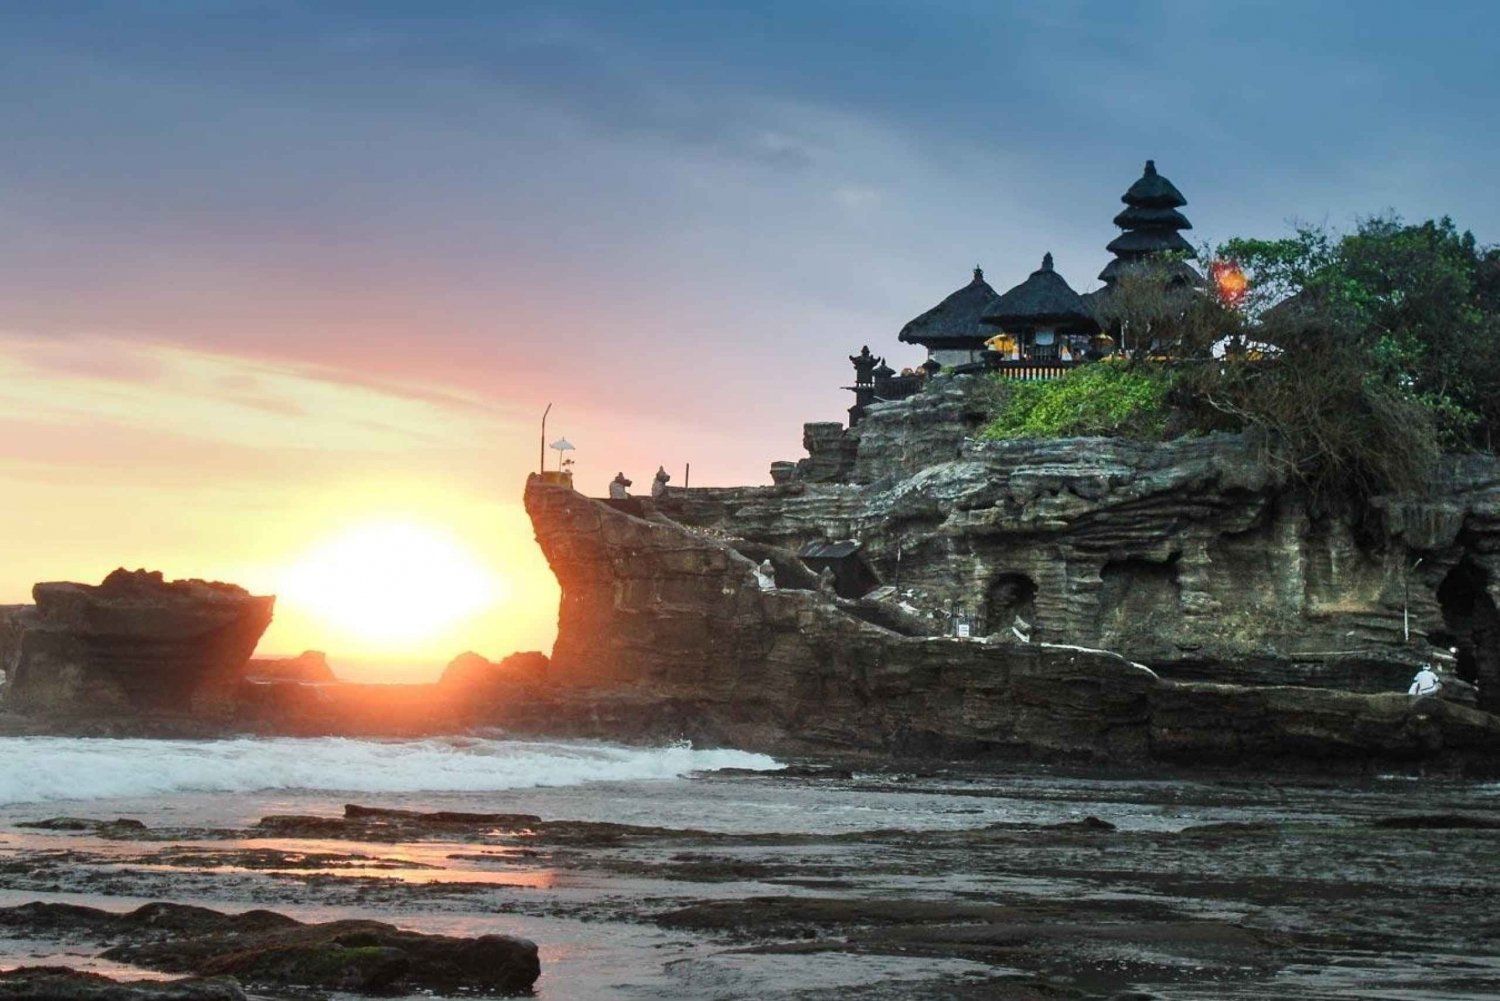 Bali: Halvdagstur till solnedgången i Tanah Lot-templet